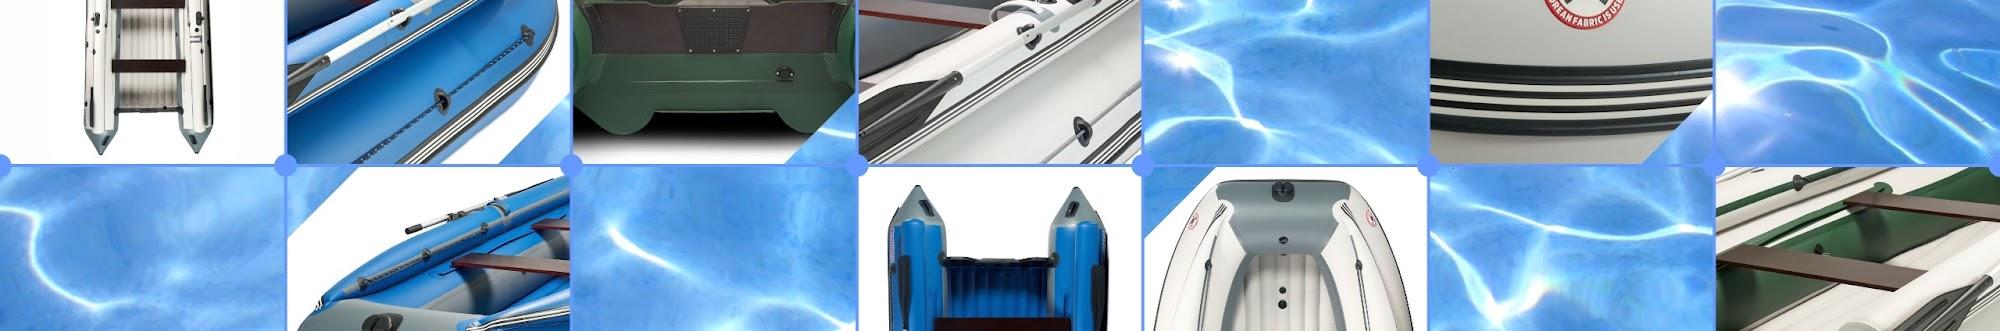 MISHIMO - лодки и лодочные моторы, обзоры, отзывы